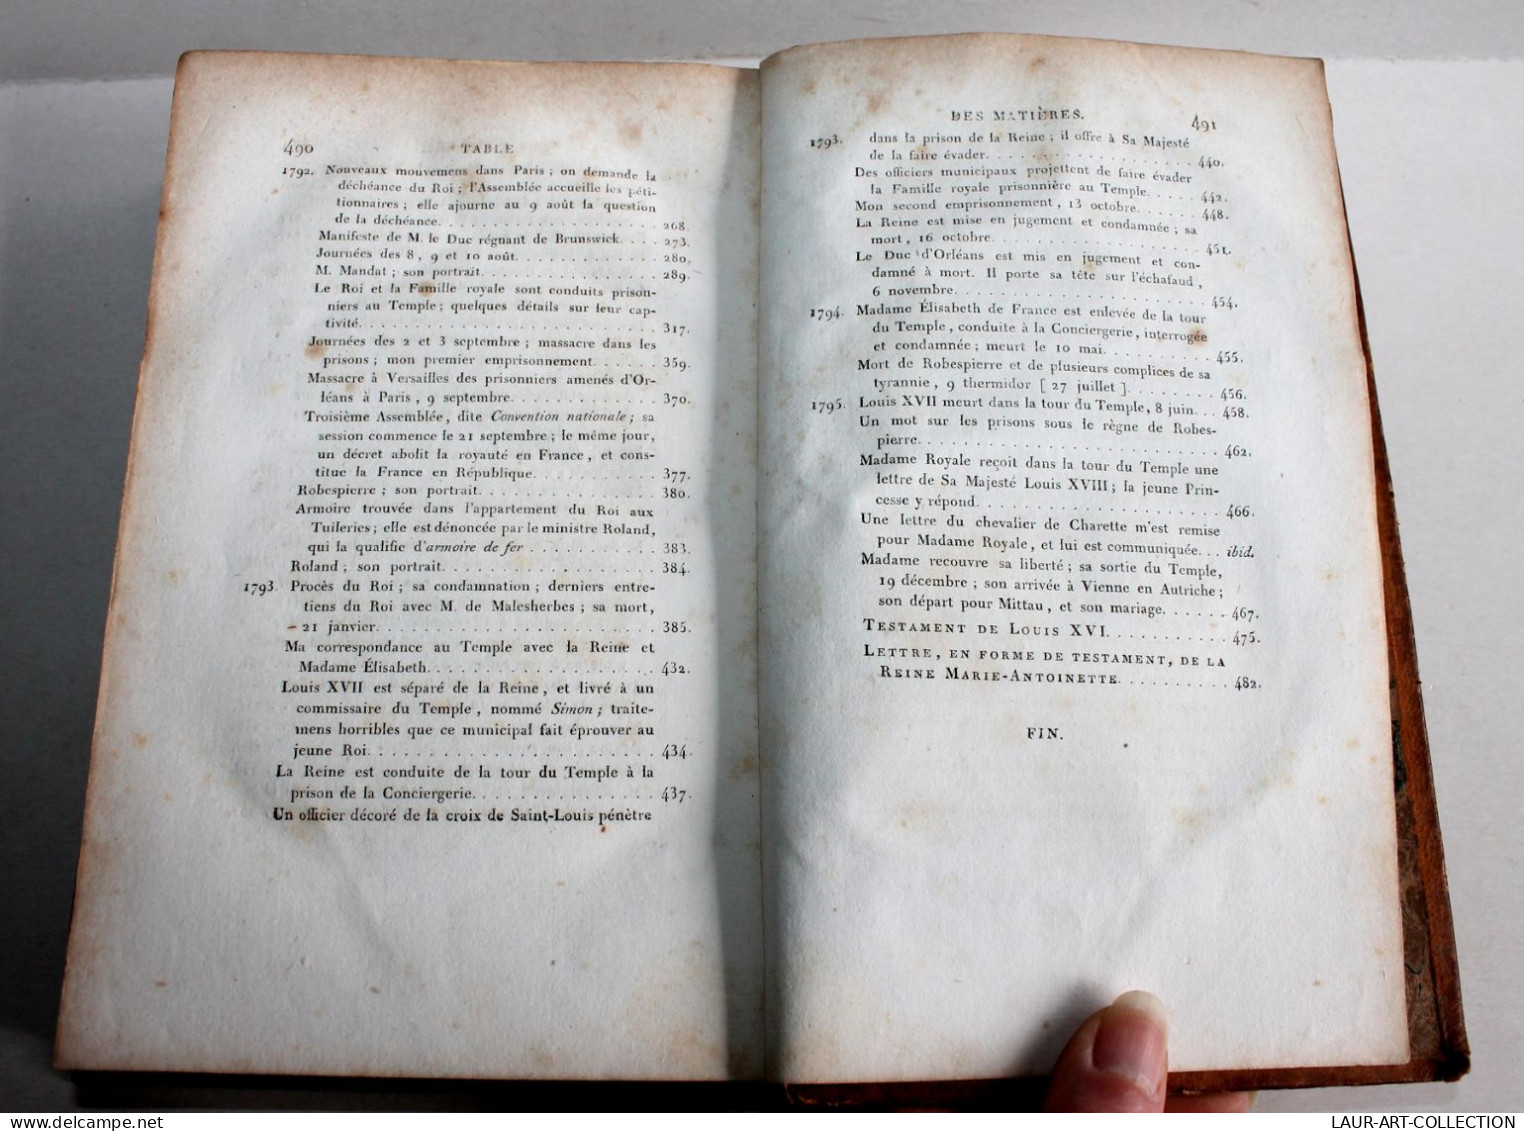 DERNIERES ANNEES DU REGNE ET DE LA VIE DE LOUIS XVI de FRANCOIS HUE, 2e Ed. 1816 / ANCIEN LIVRE XIXe SIECLE (1803.162)